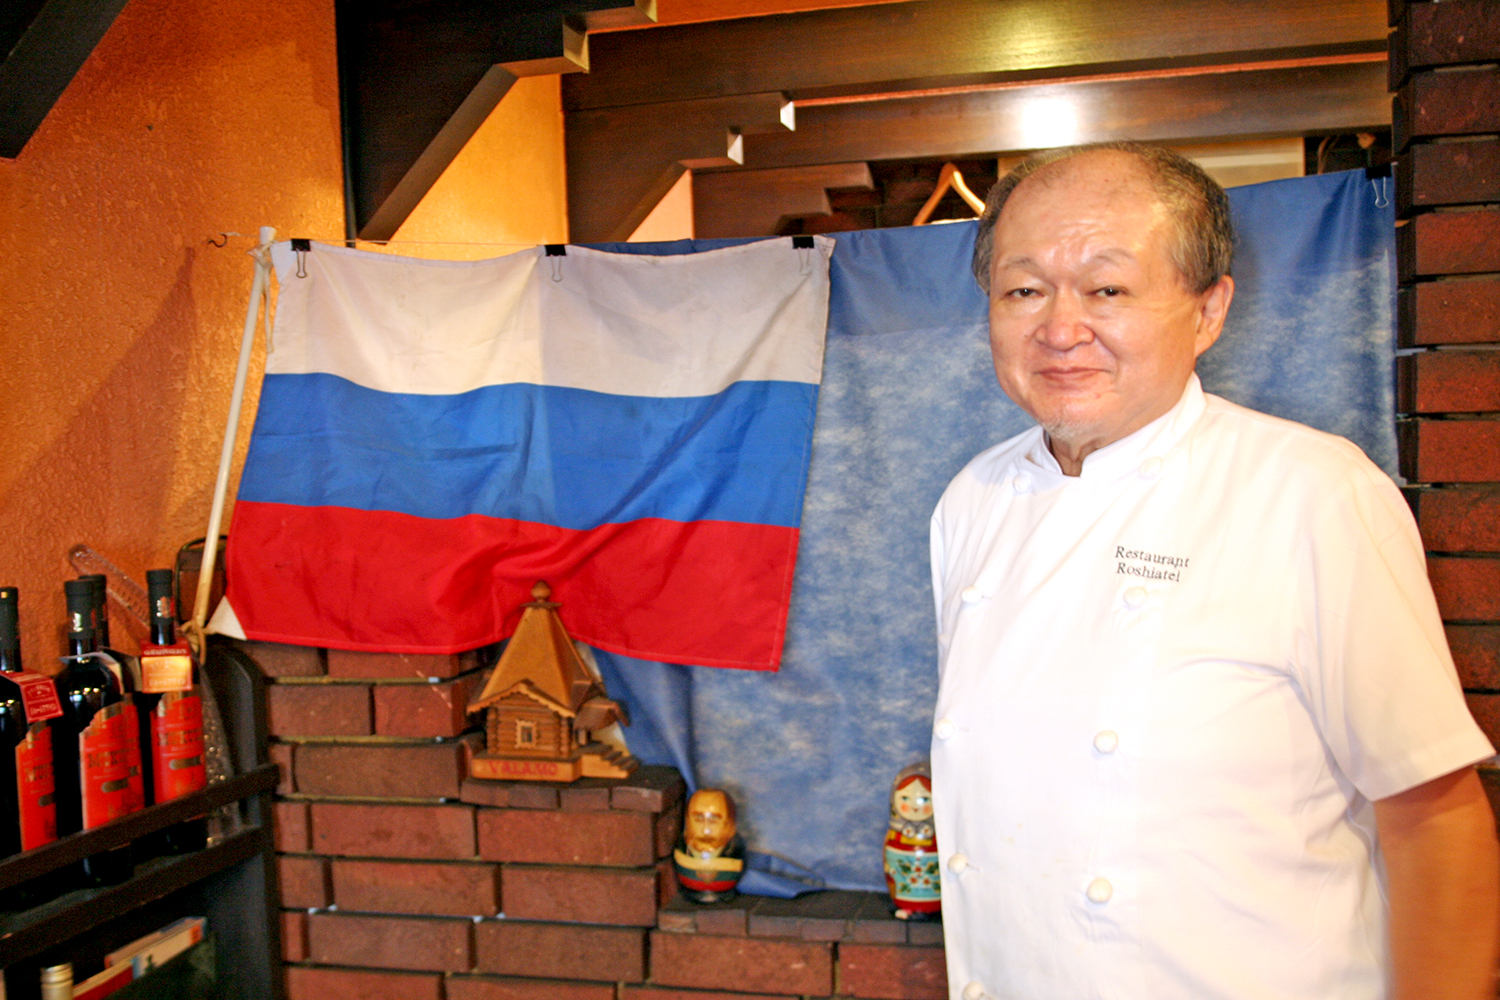 白・青・赤の“スラブ三原色”と呼ばれるロシアの国旗と、オーナーの北市泰生さん。